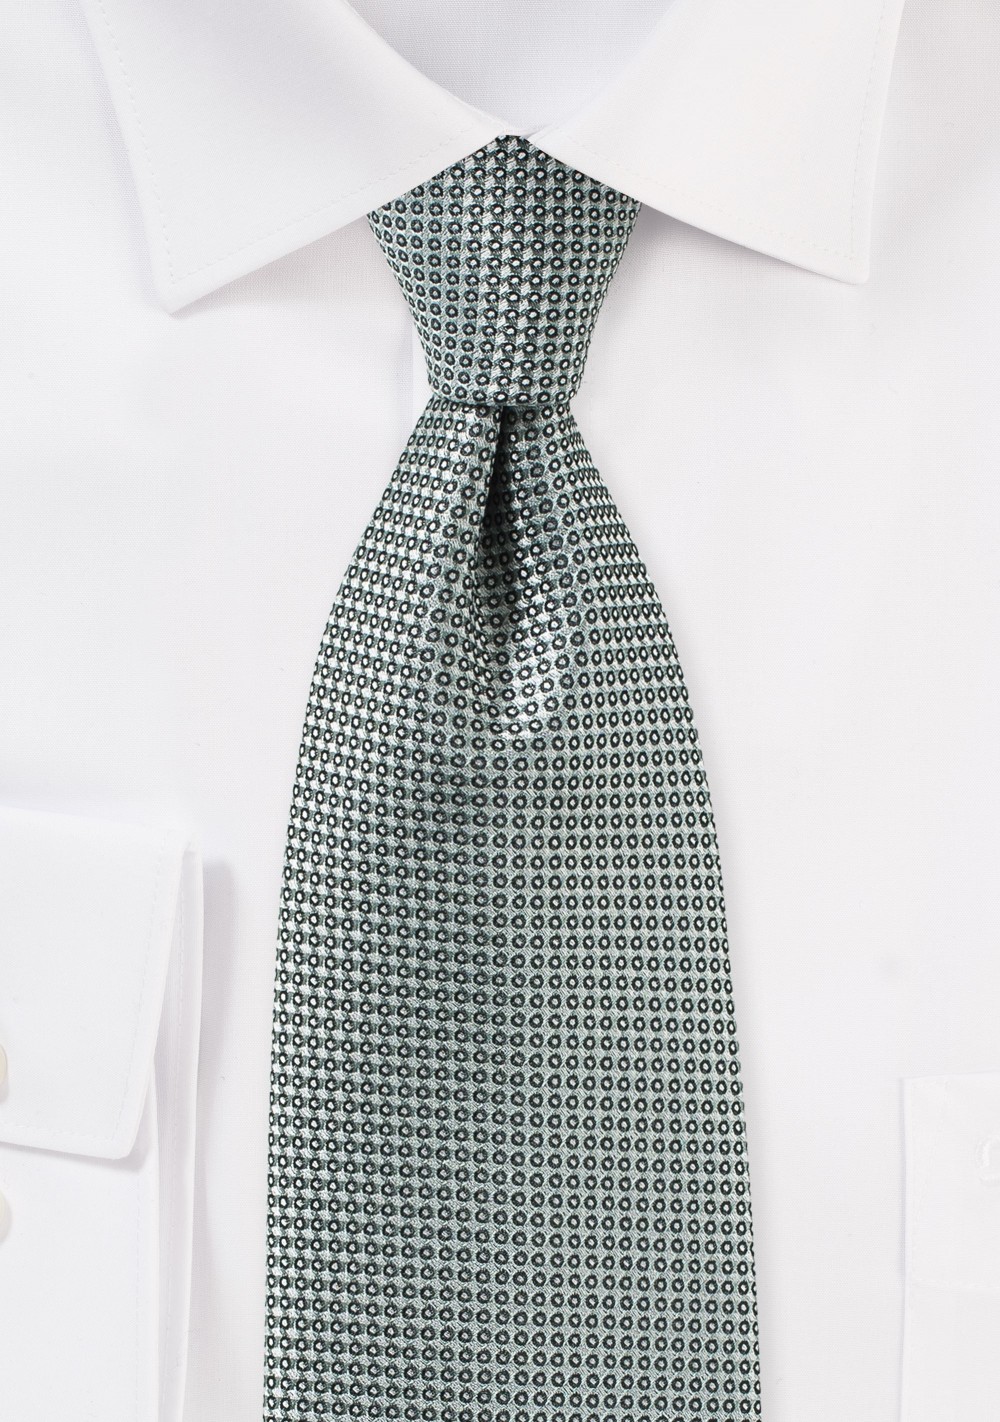 Textured Tie in Gray